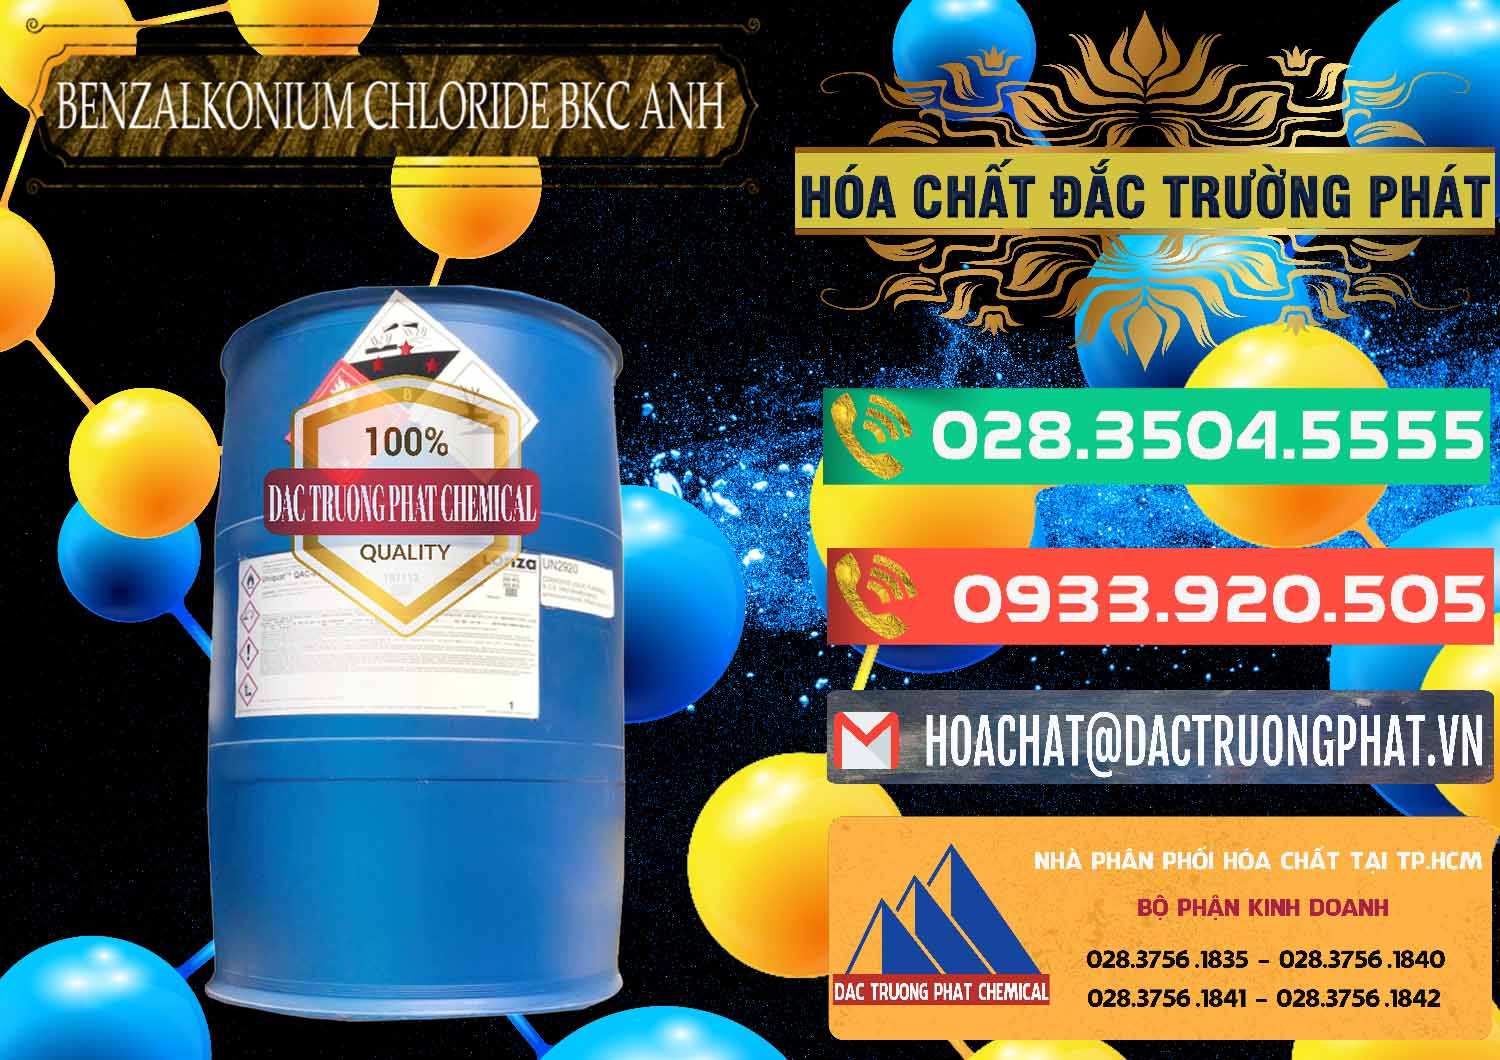 Công ty chuyên bán & phân phối BKC - Benzalkonium Chloride 80% Anh Quốc Uk Kingdoms - 0457 - Nơi cung cấp và bán hóa chất tại TP.HCM - congtyhoachat.com.vn